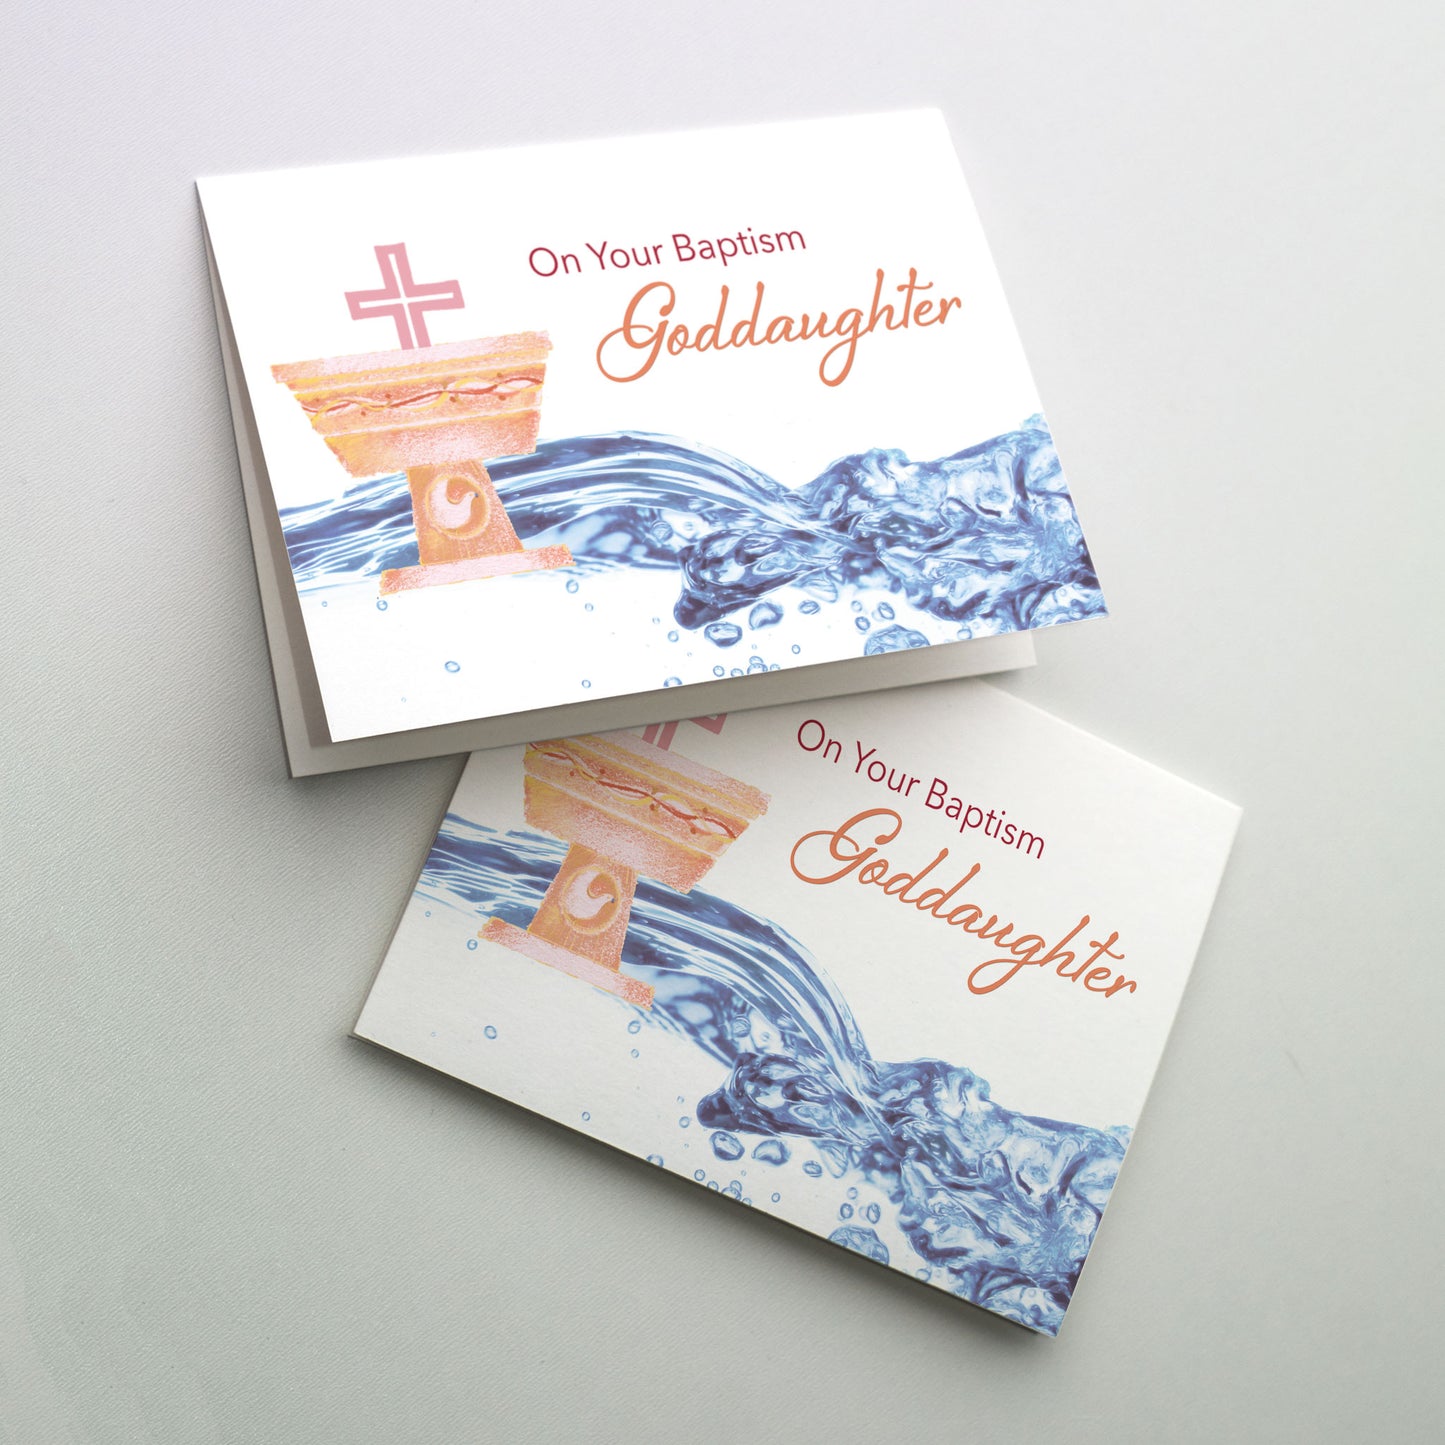 On Your Baptism, Goddaughter - Baptism Card for Goddaughter